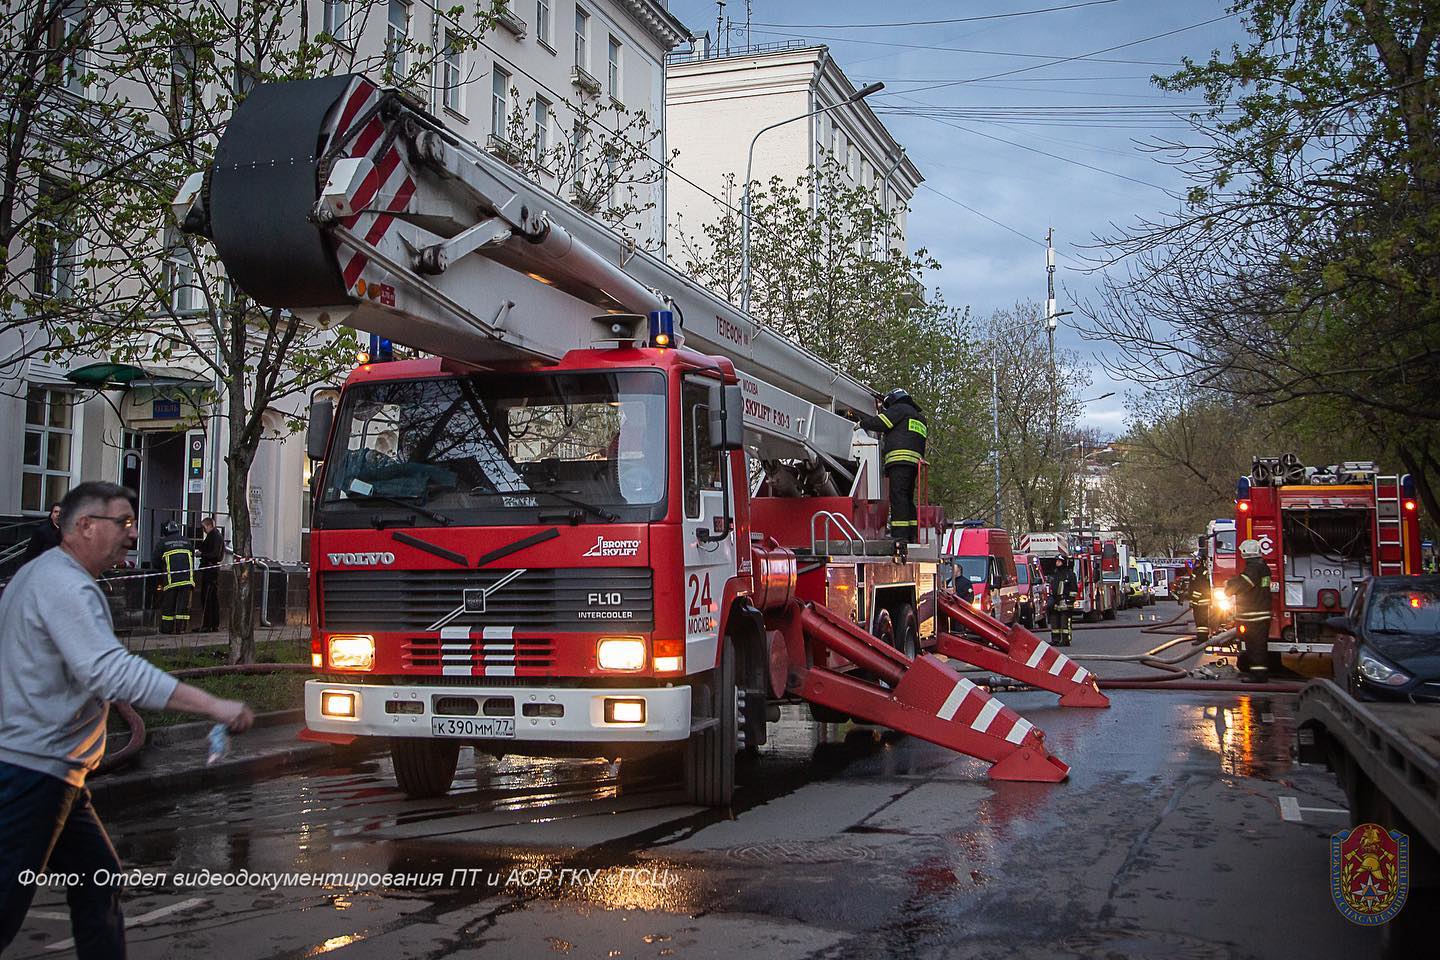 

Пять кадетов из Ижевска попали в больницу в результате пожара в гостинице «Вечный зов» в Москве

